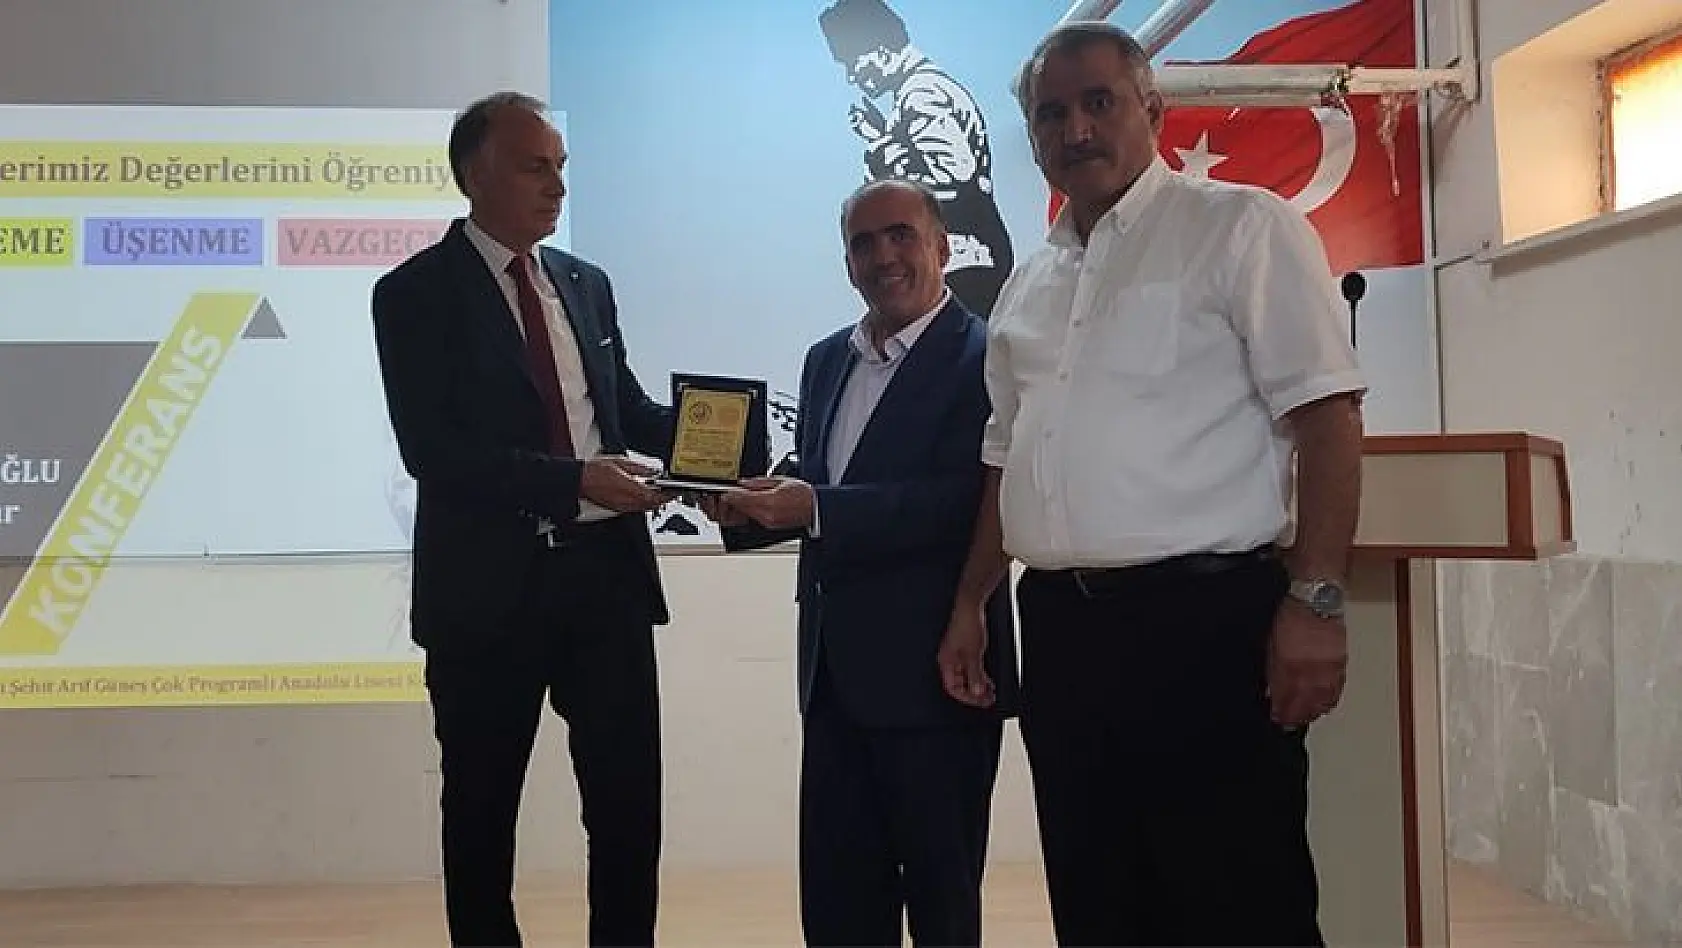 Elazığ'da 'Erteleme, Üşenme, Vazgeçme' konulu konferans verildi